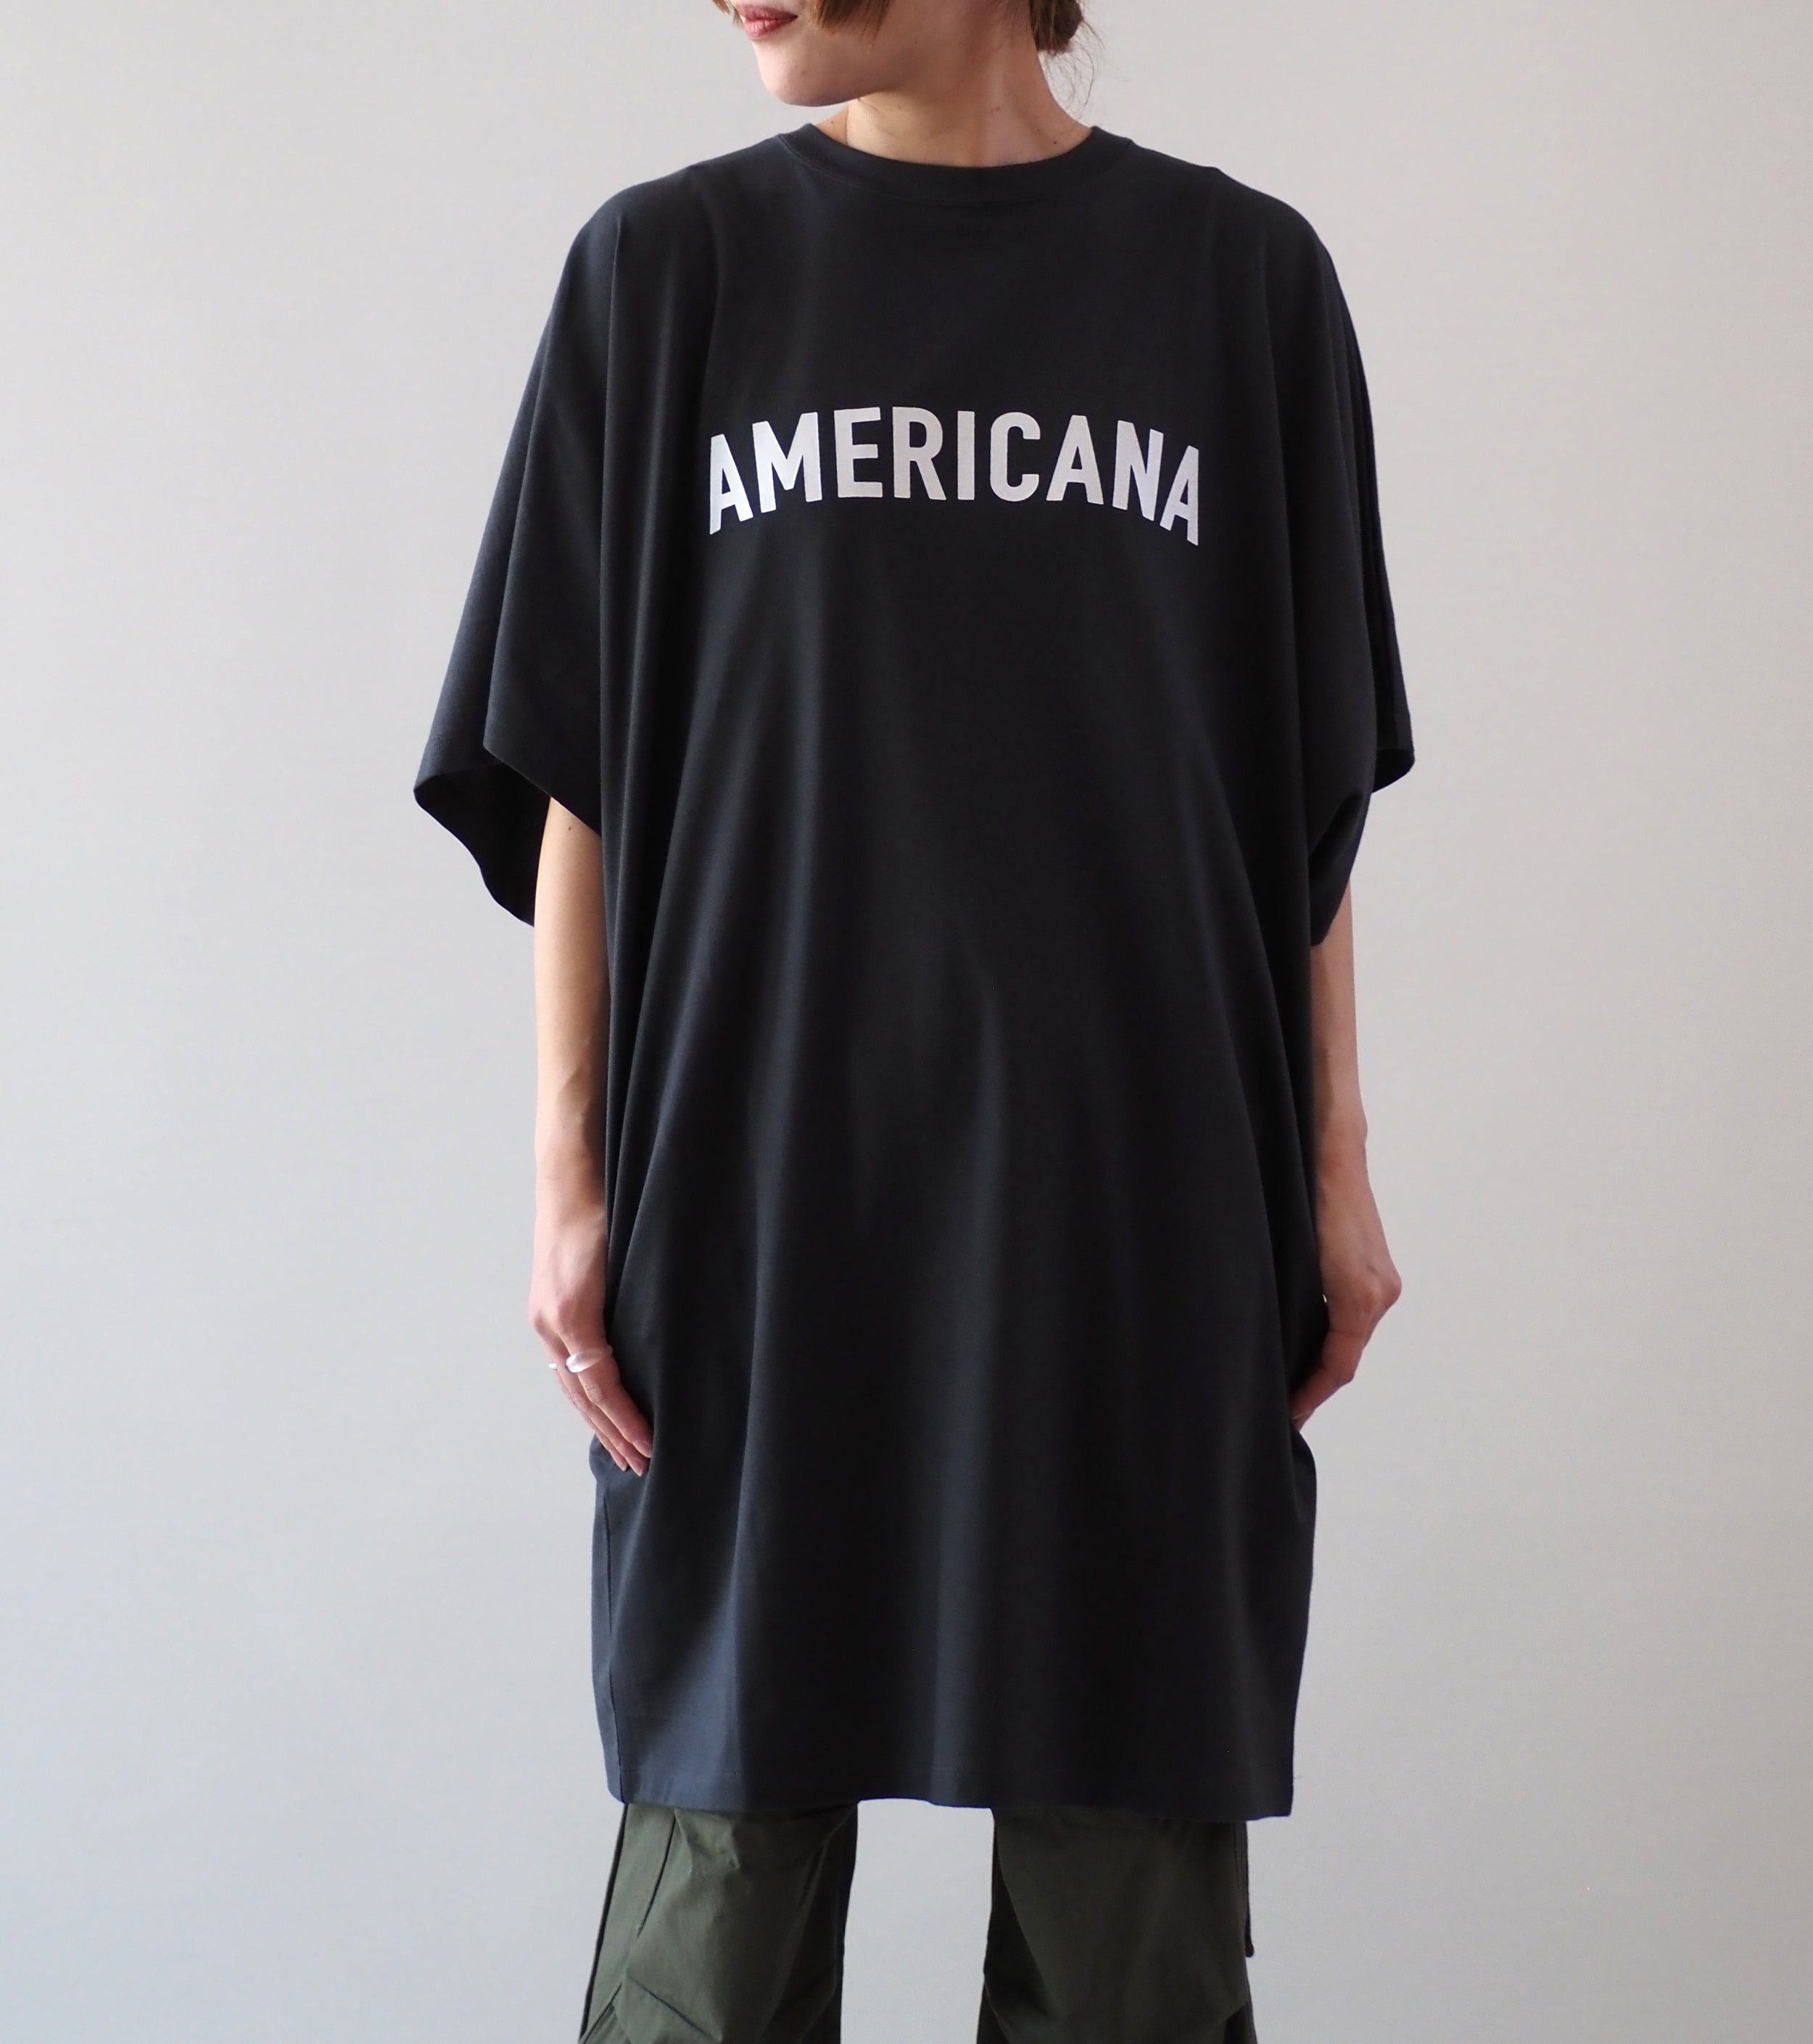 Americana ワイド スリーブ ティーシャツ チュニック丈, Sumikuro